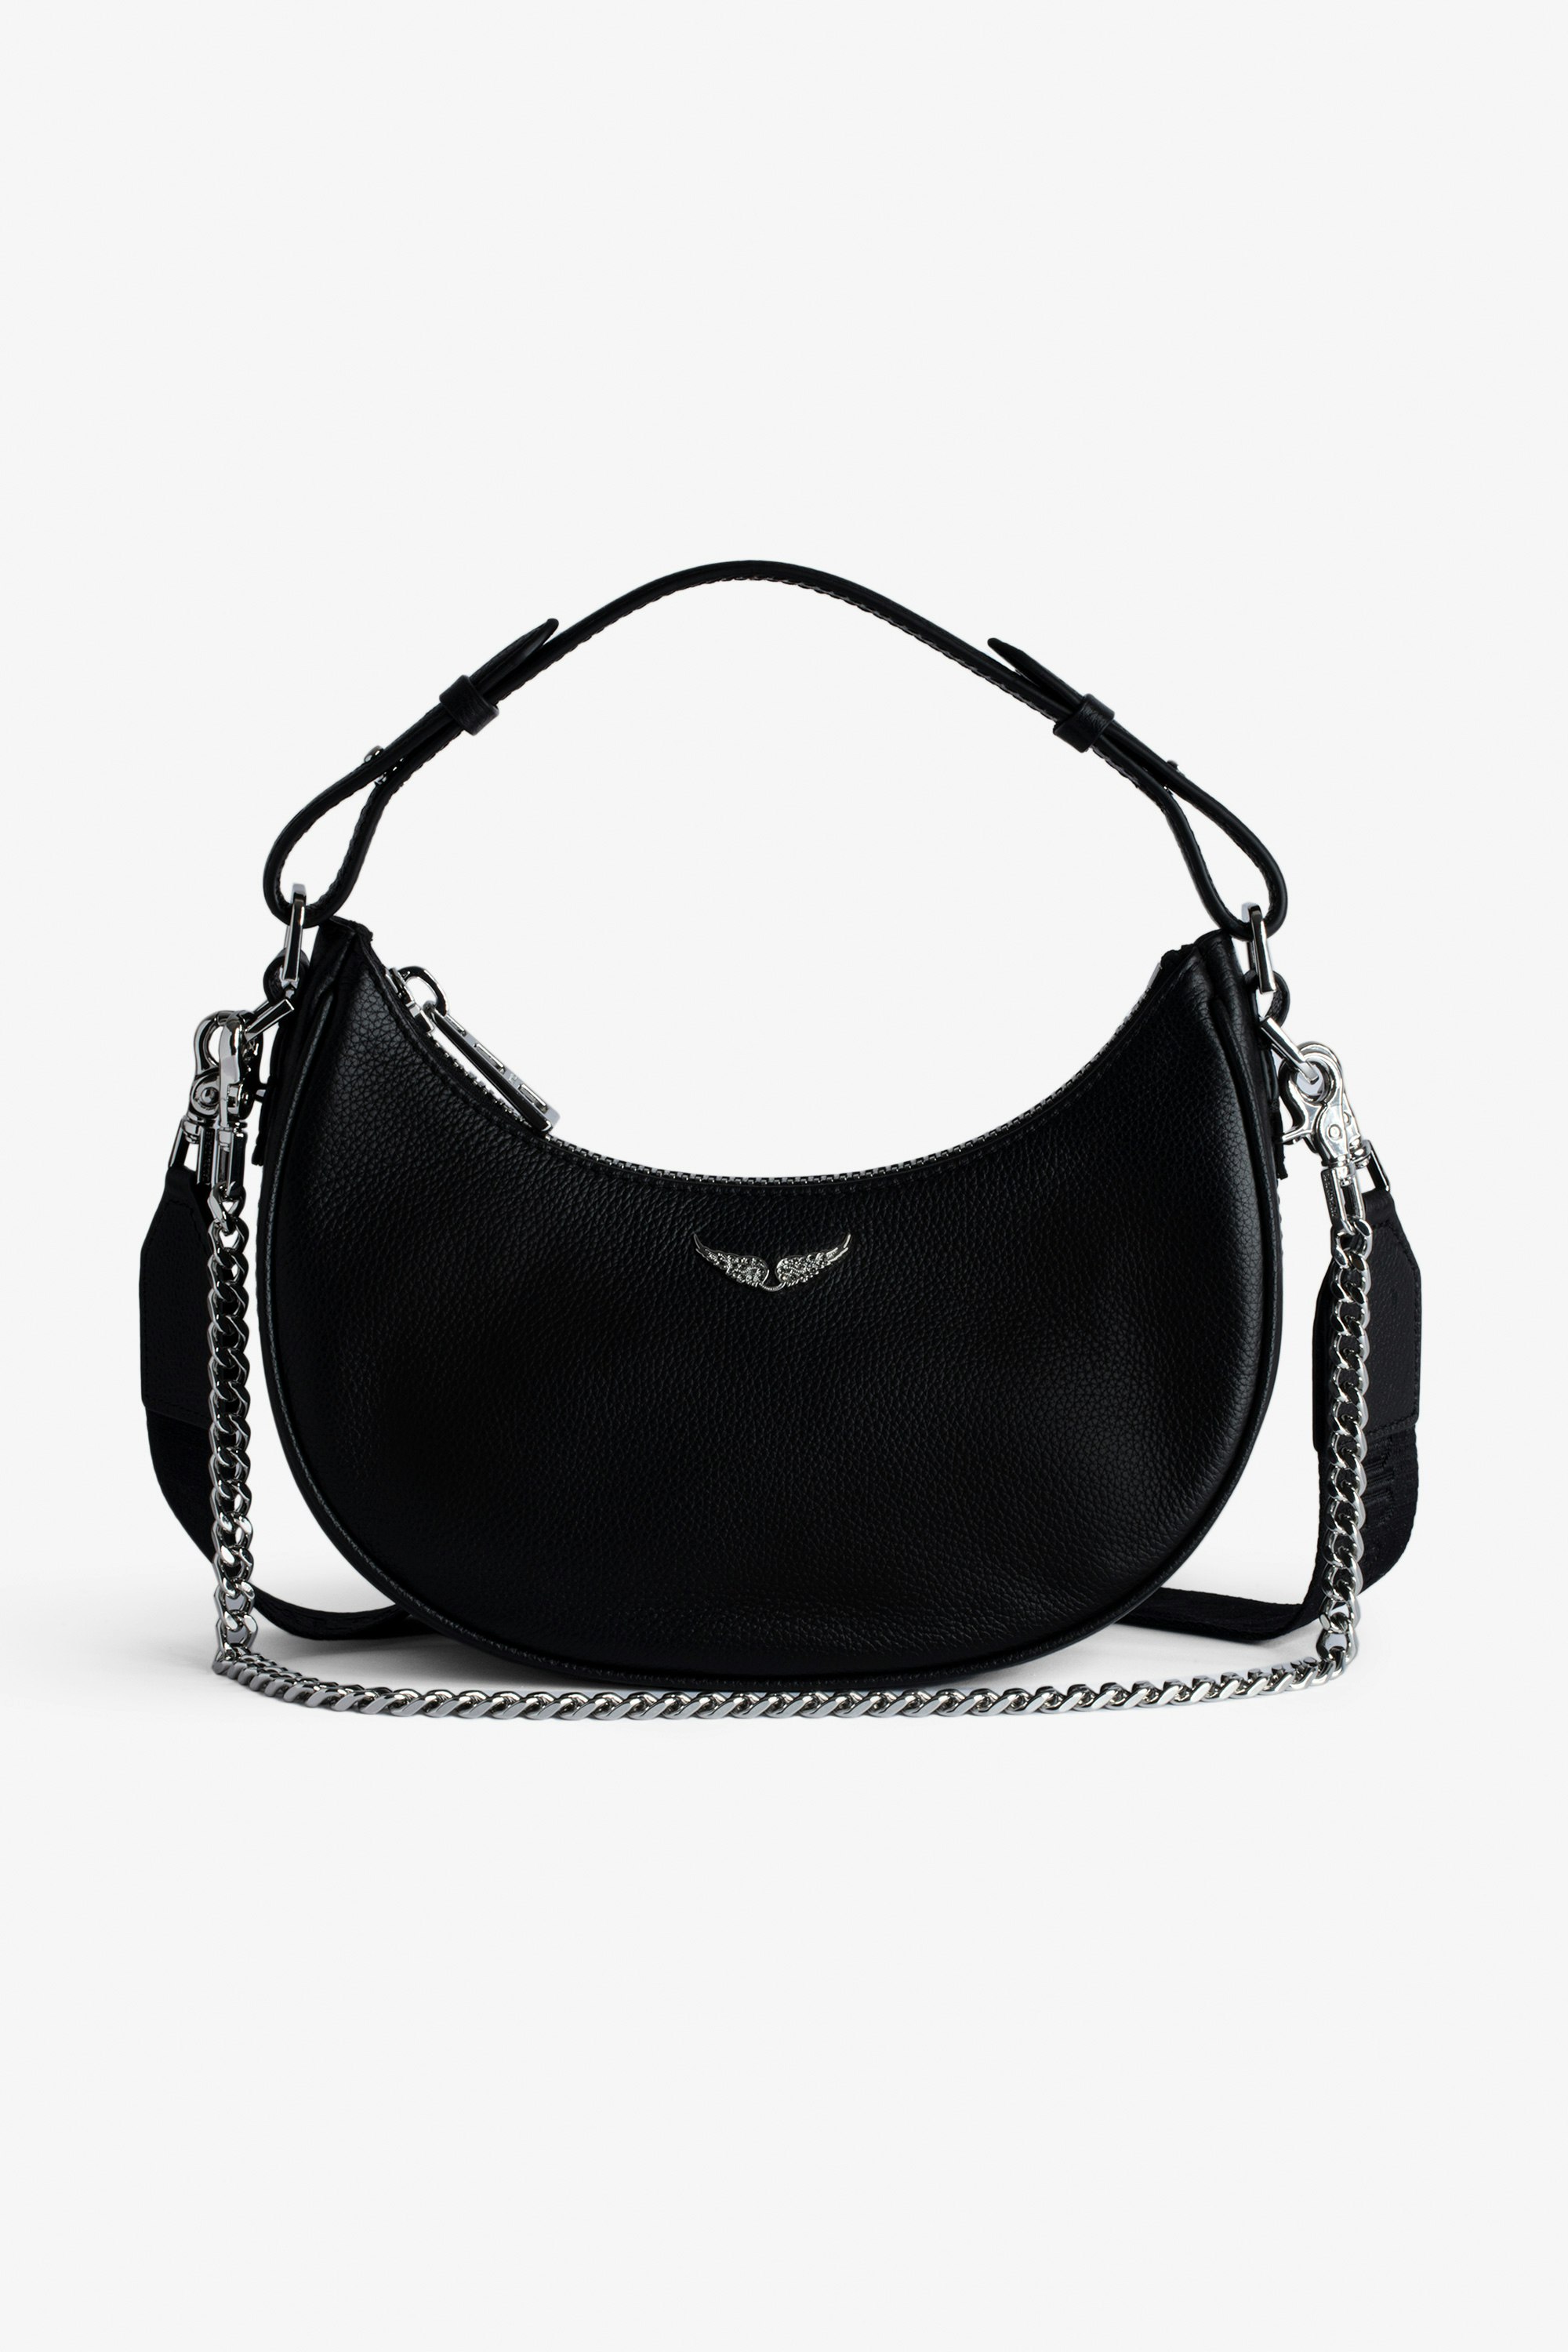 Tasche Moonrock - Halbmondtasche für Damen aus schwarzem genarbtem Leder mit kurzem Henkel, Schulterriemen, Kette und Signature-Flügeln.